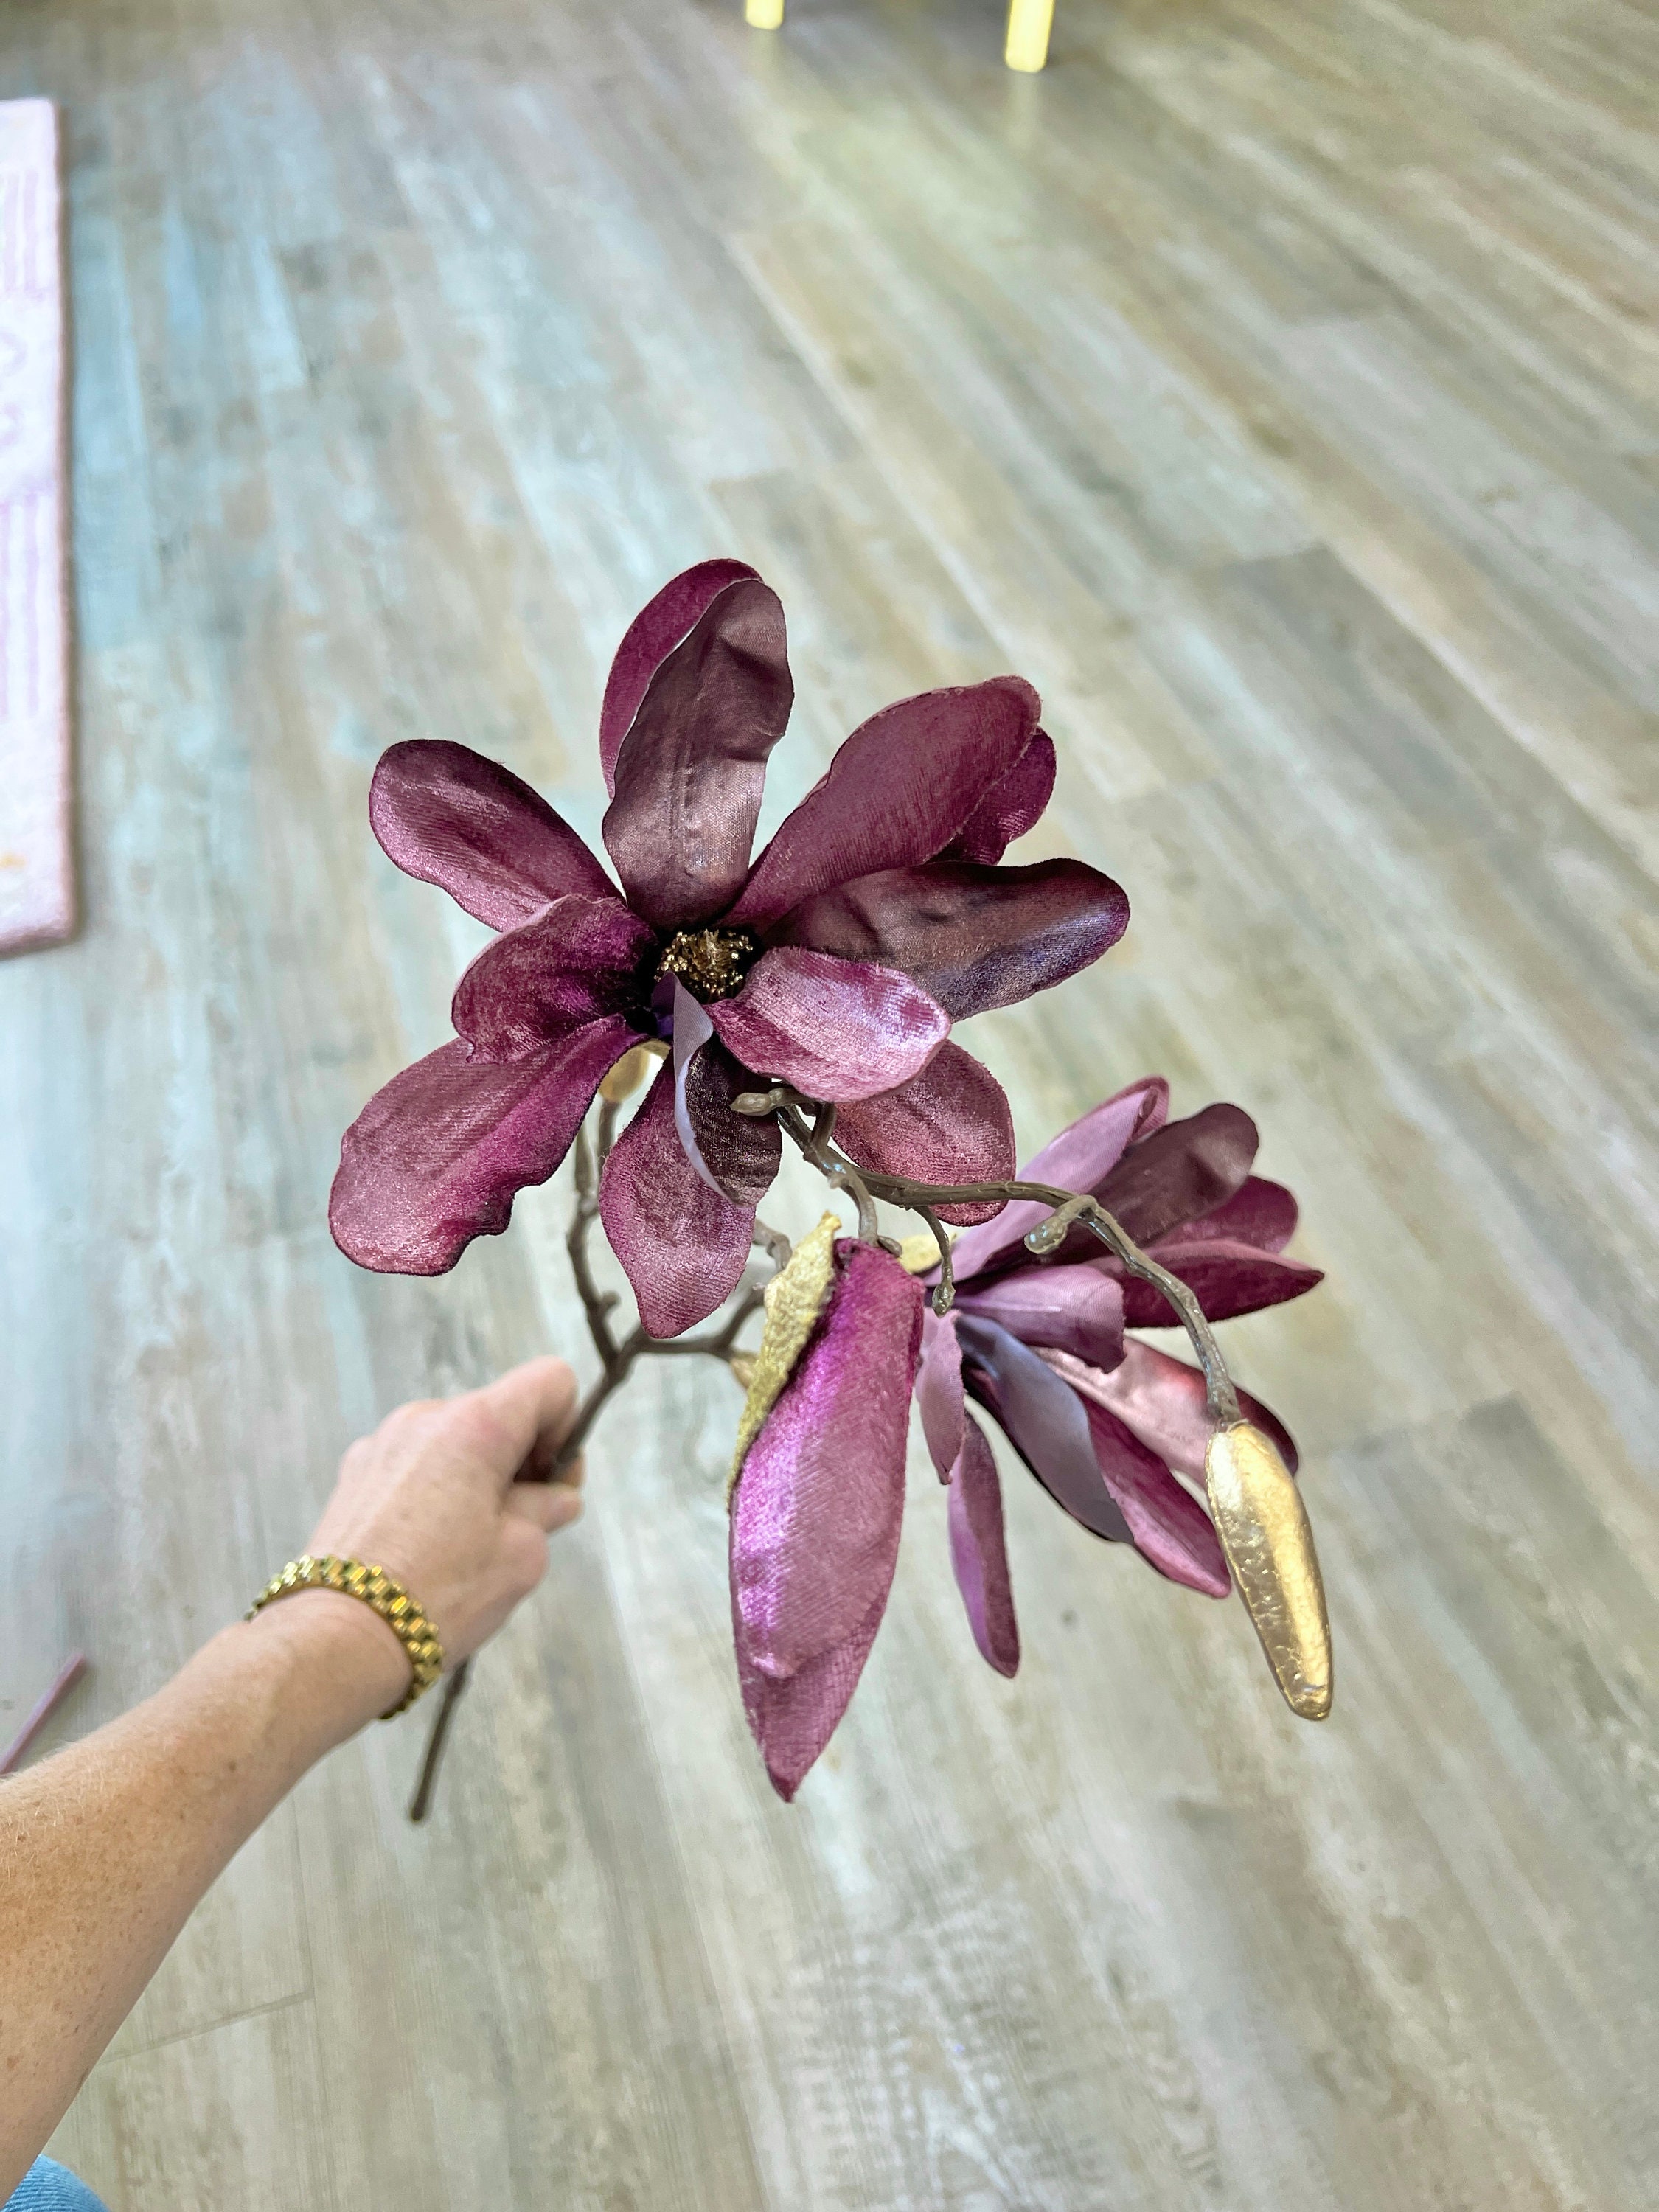 10 Velvet & Glitter Magnolia Spray: Dark Purple [85318DKPU